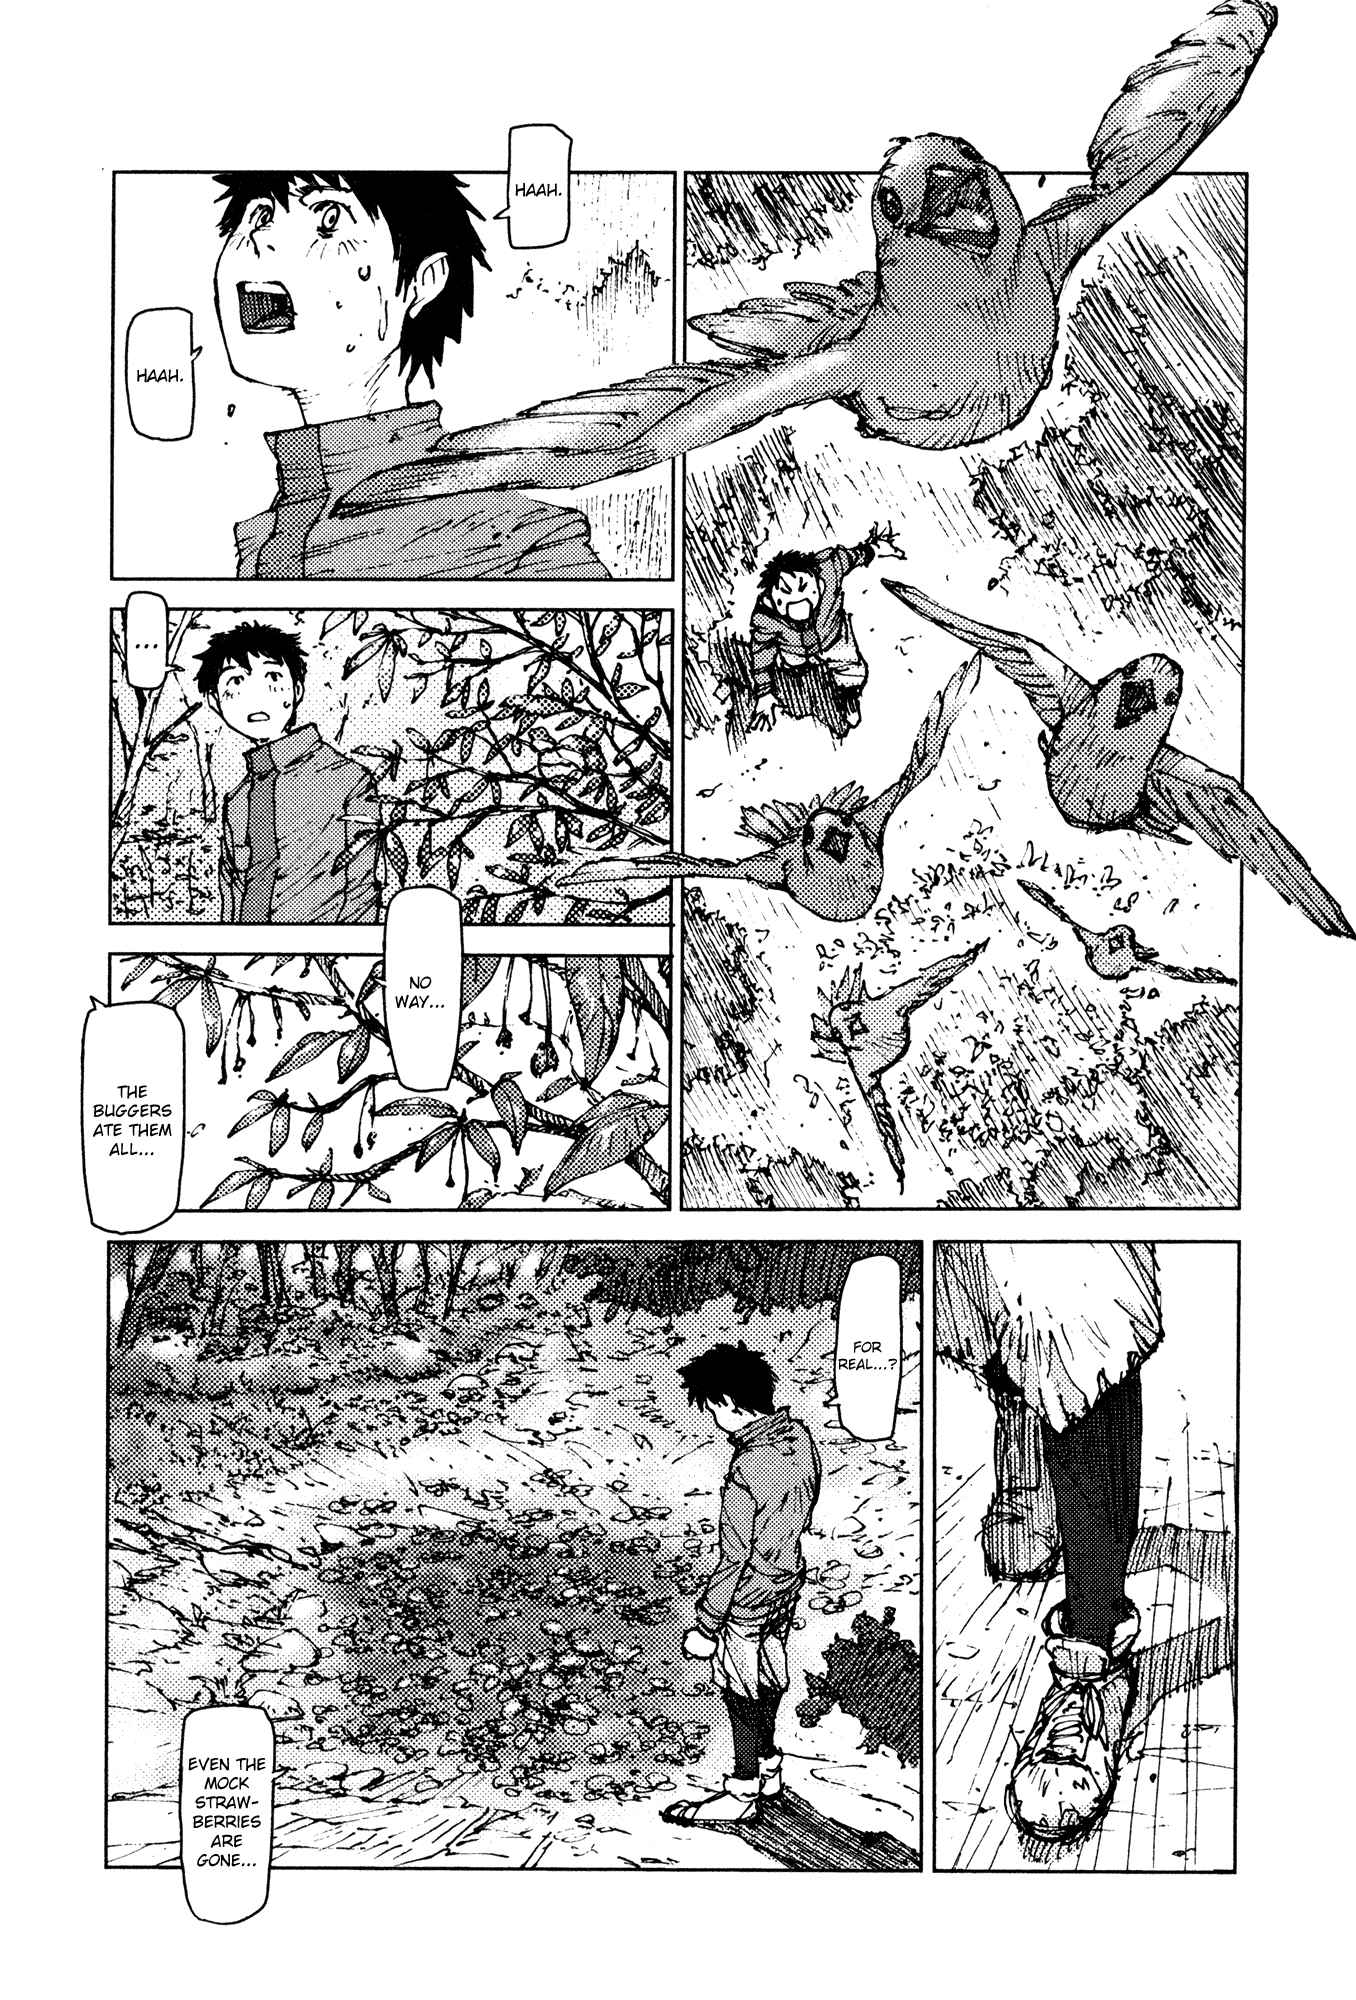 Survival: Shounen S no Kiroku Vol.1 Ch.6